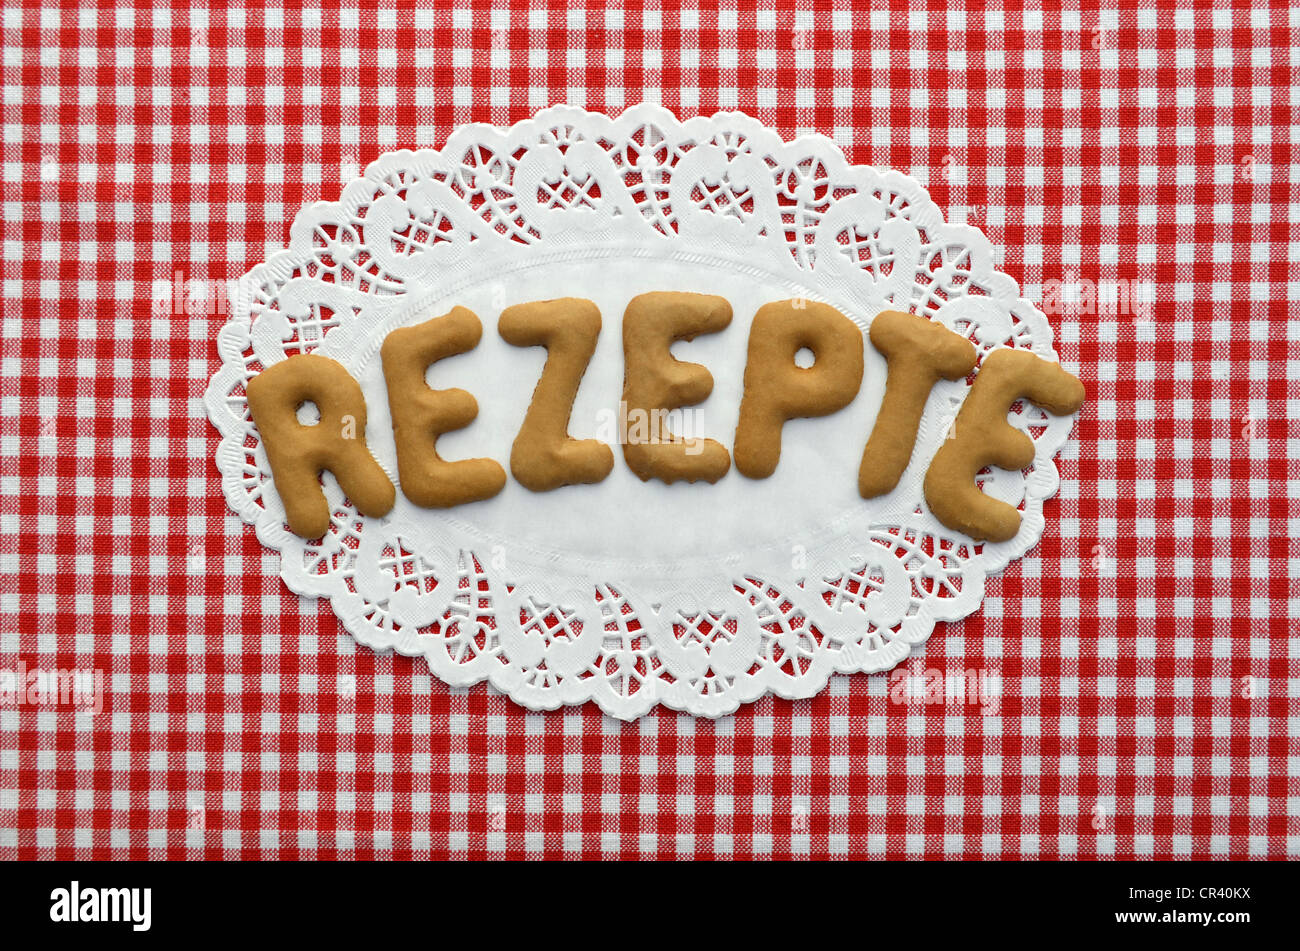 Rezept o ricetta scritta in alfabeto i biscotti su carta centrino Foto Stock